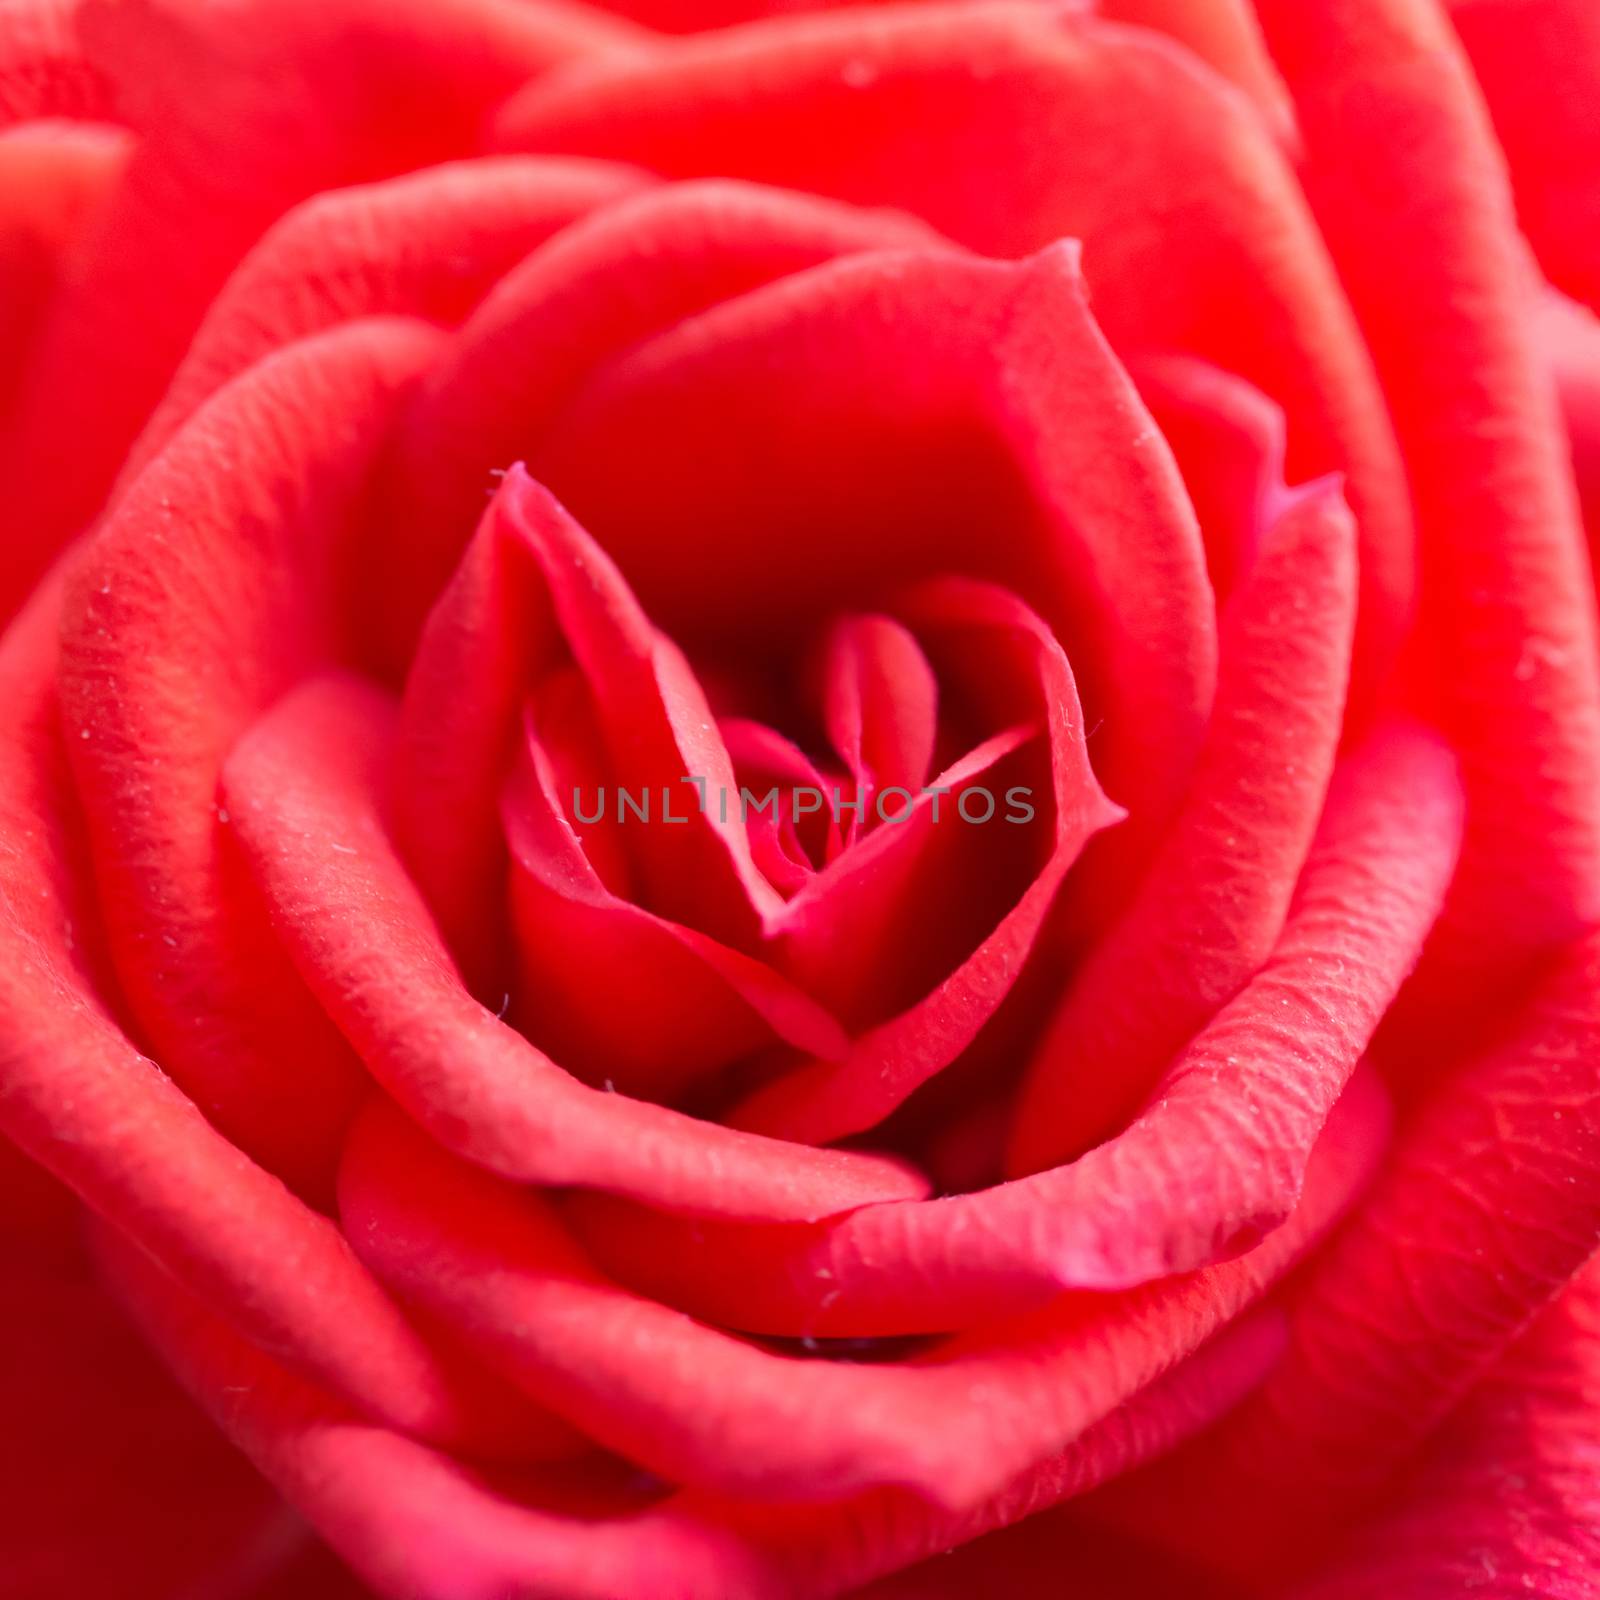 Red rose, romantic flower. Closeup macro shot